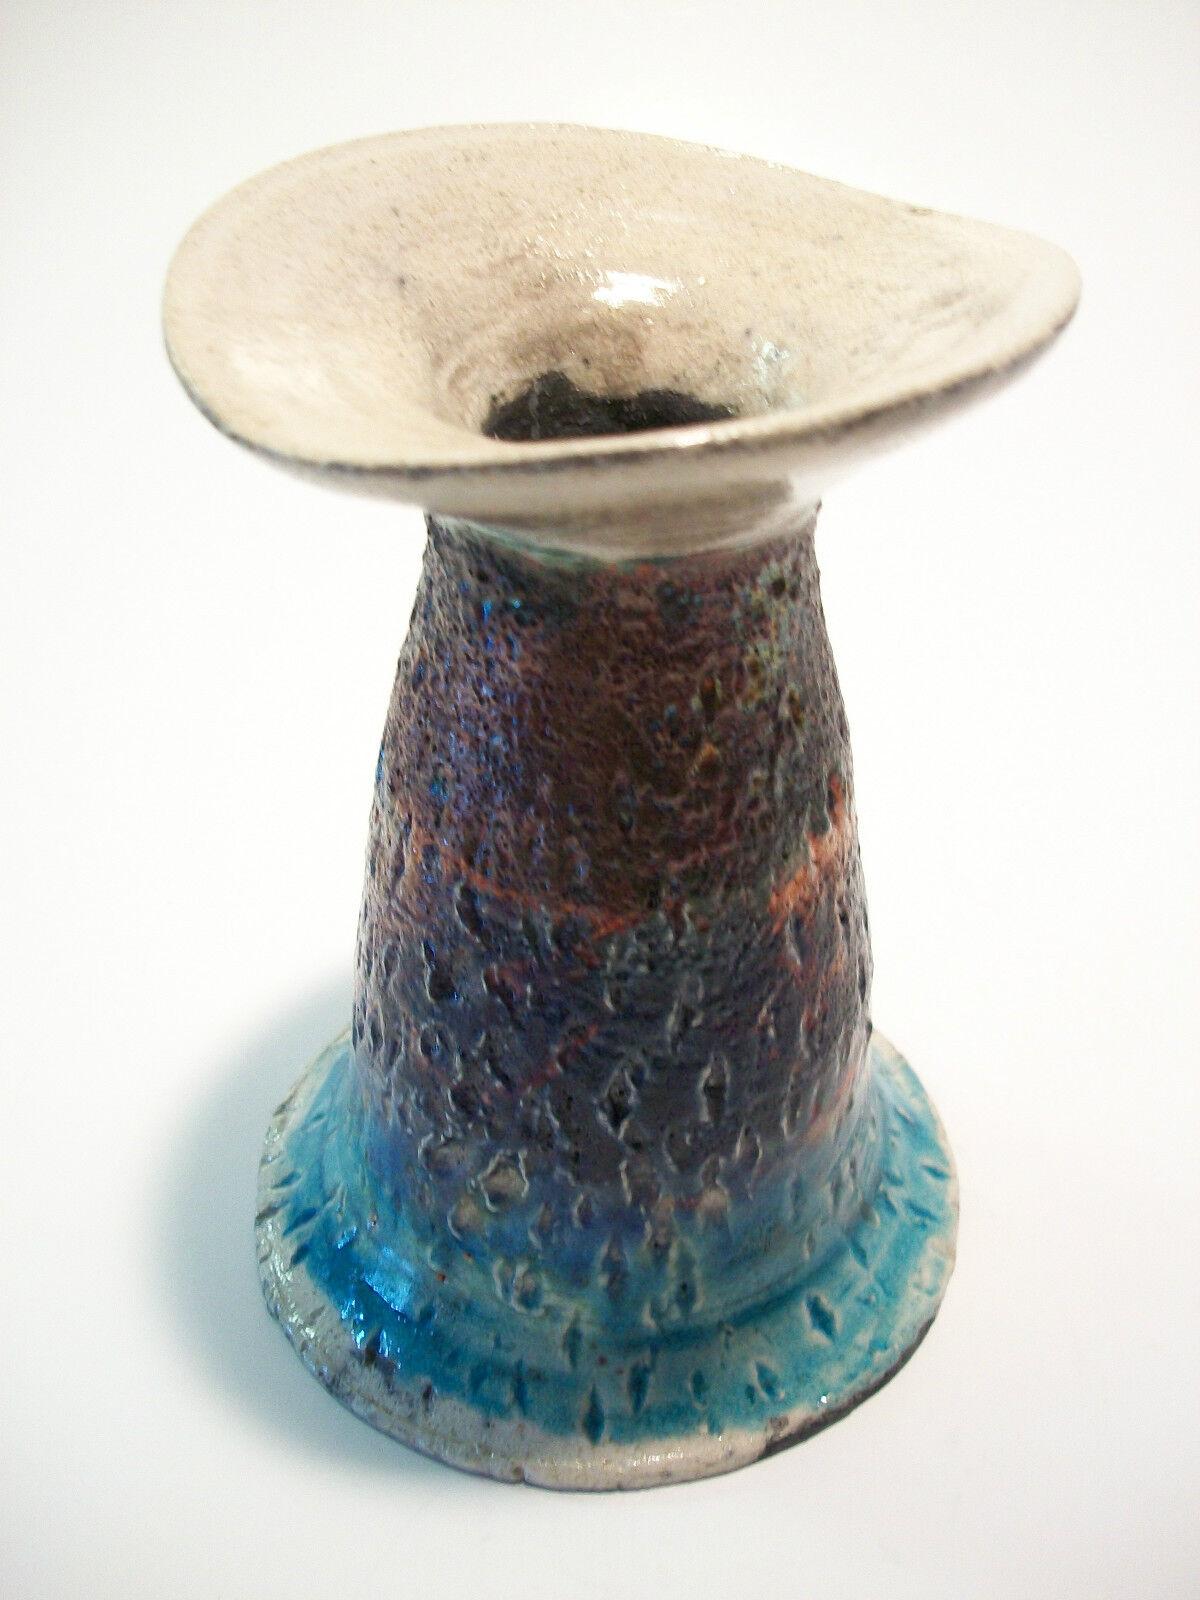 Vase vintage en poterie du studio Raku, fait à la main et décoré d'incisions, avec une glaçure irisée graduée - signé/initié sur la base 'HK' - circa 1970's.

Excellent état vintage - pas de perte - pas de dommage - pas de restauration.

Taille - 4